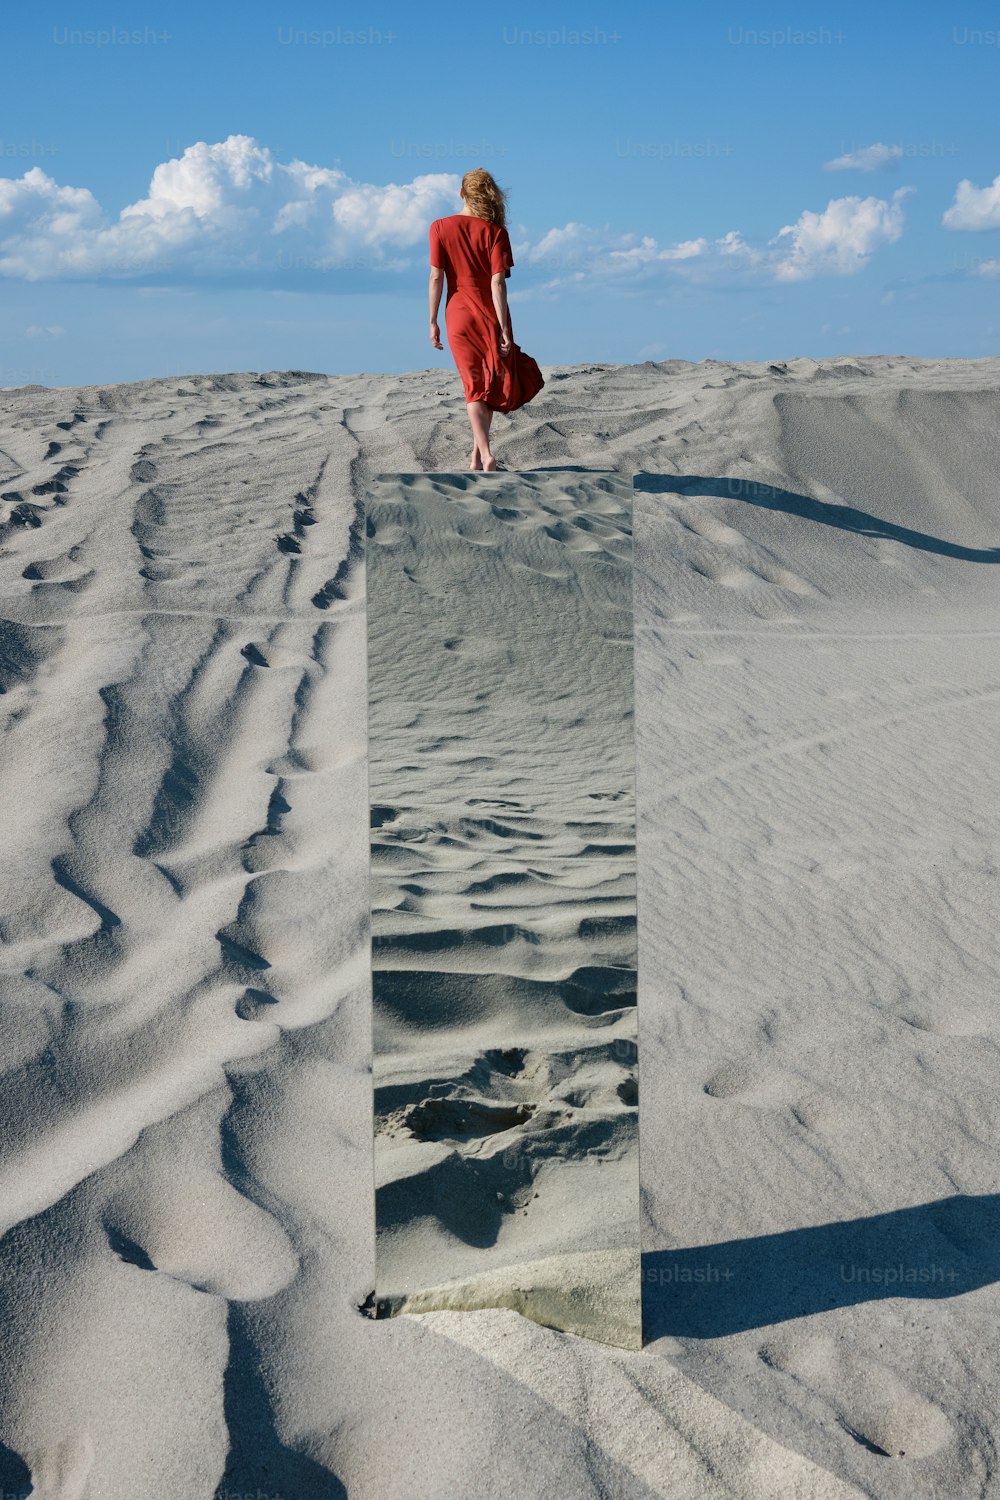 赤いドレスを着た女性が砂の中を歩いている